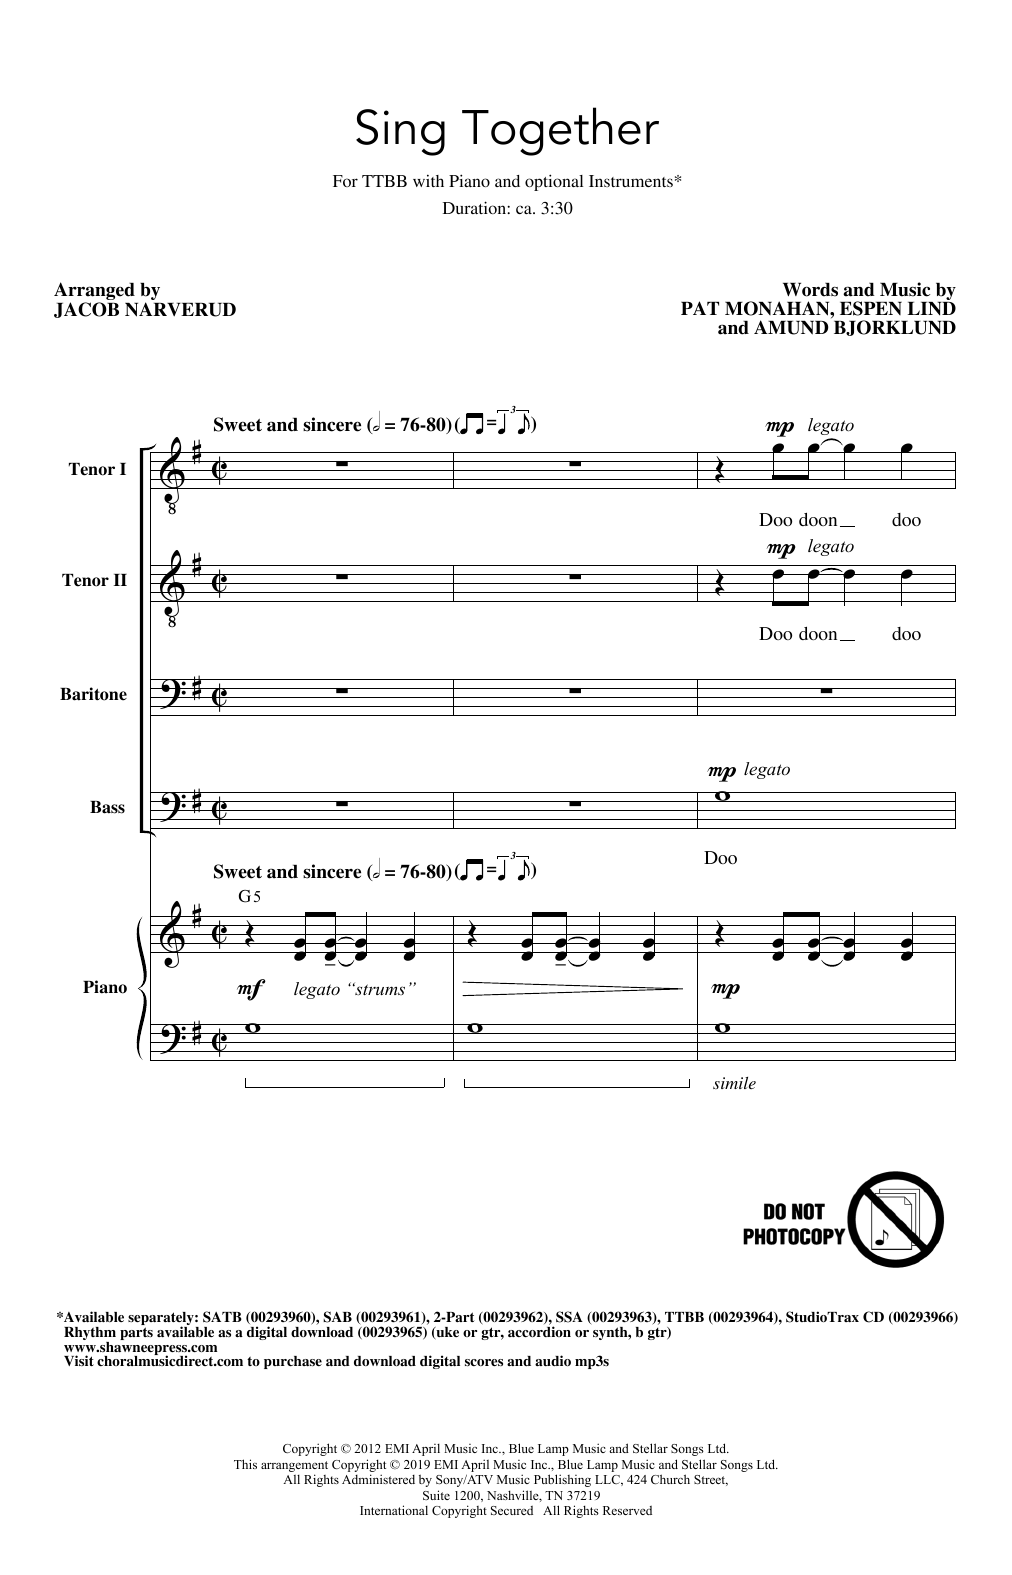 Download Train Sing Together (arr. Jacob Narverud) Sheet Music